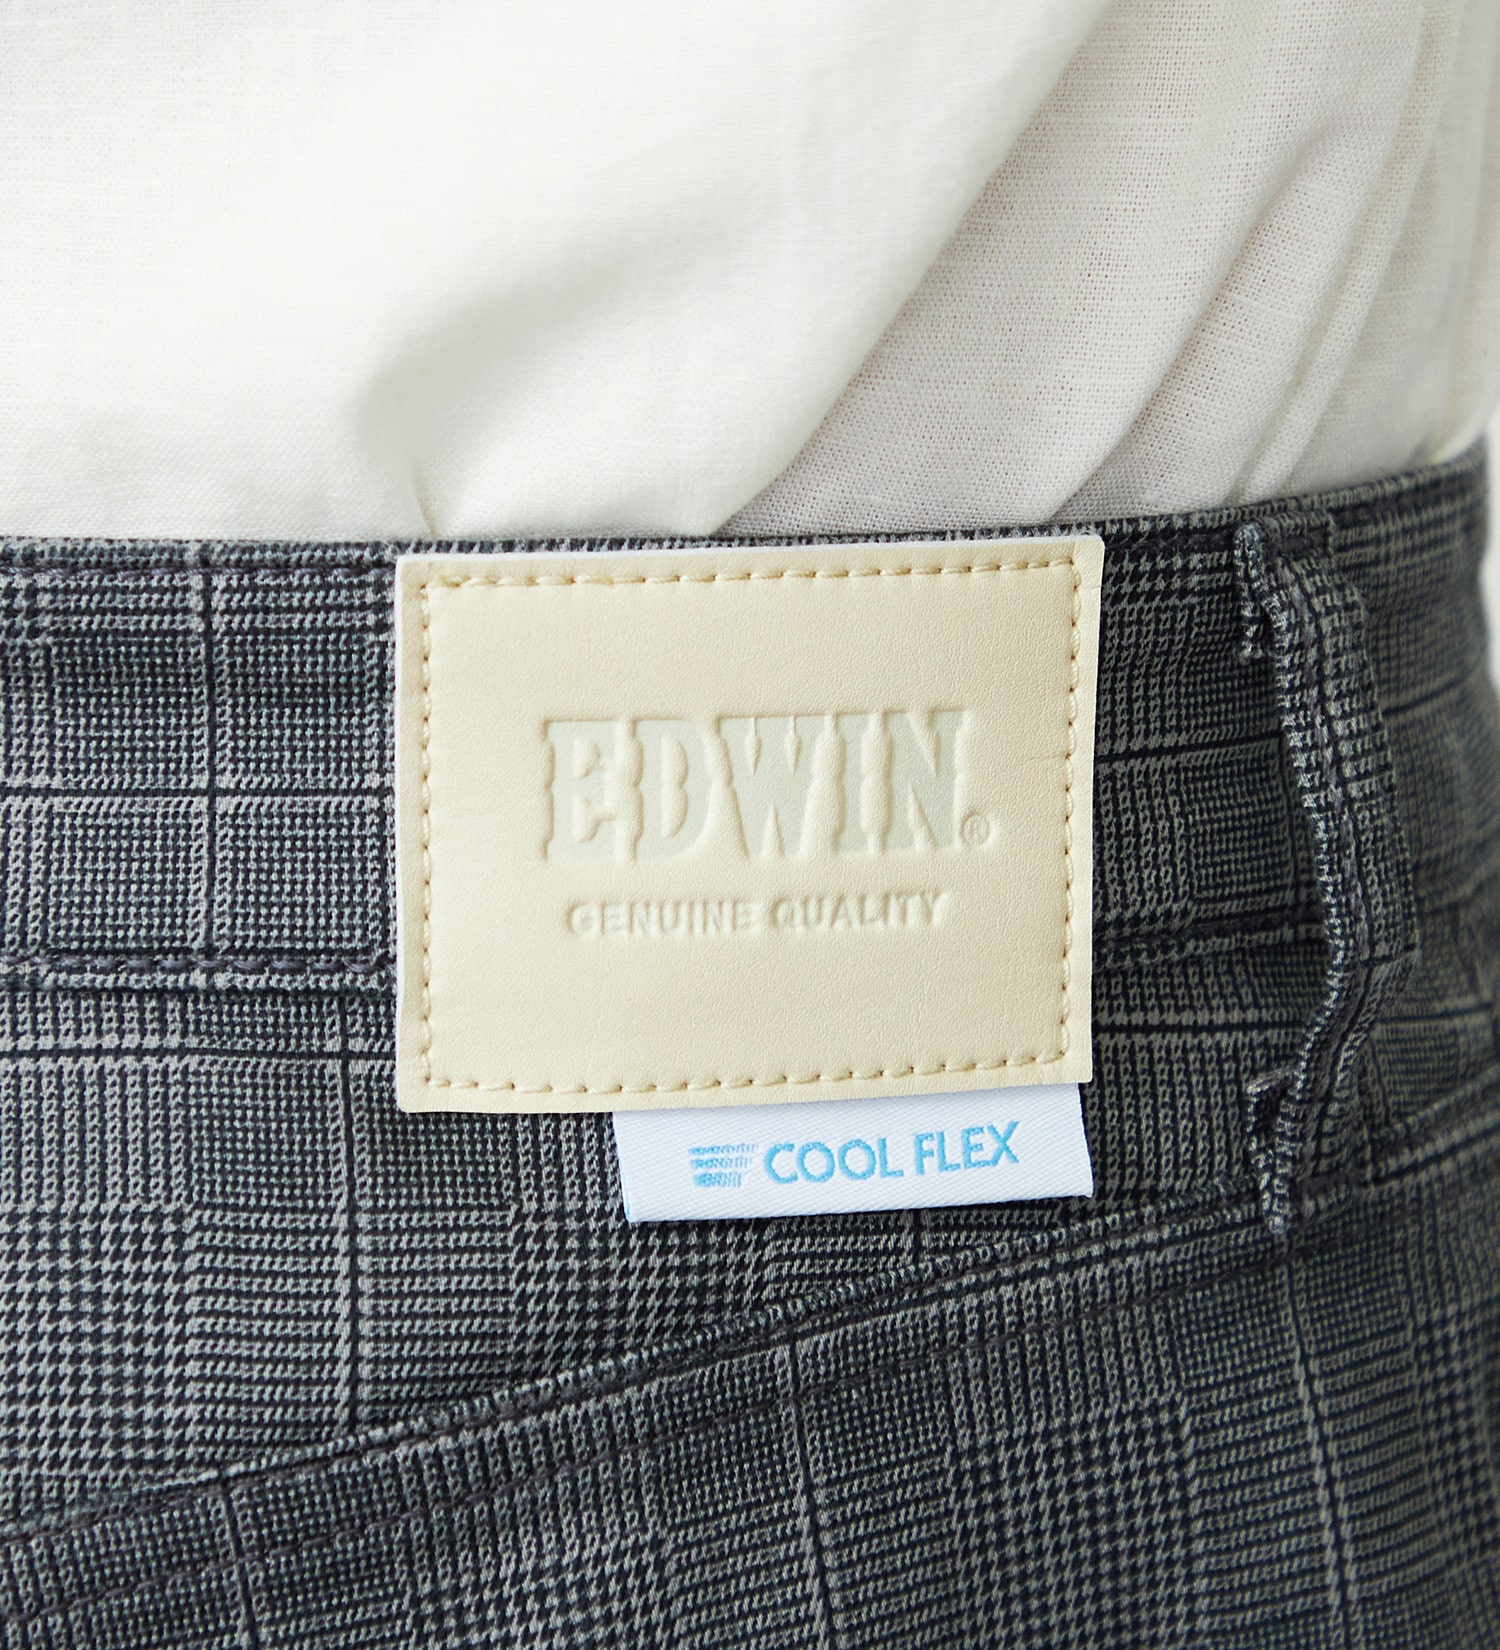 EDWIN(エドウイン)の【GW SALE】【涼】EDWIN COOLFLEX 二重織メッシュ構造 レギュラーストレートパンツ 【ドライタッチ/吸汗速乾】|パンツ/パンツ/メンズ|チェック2